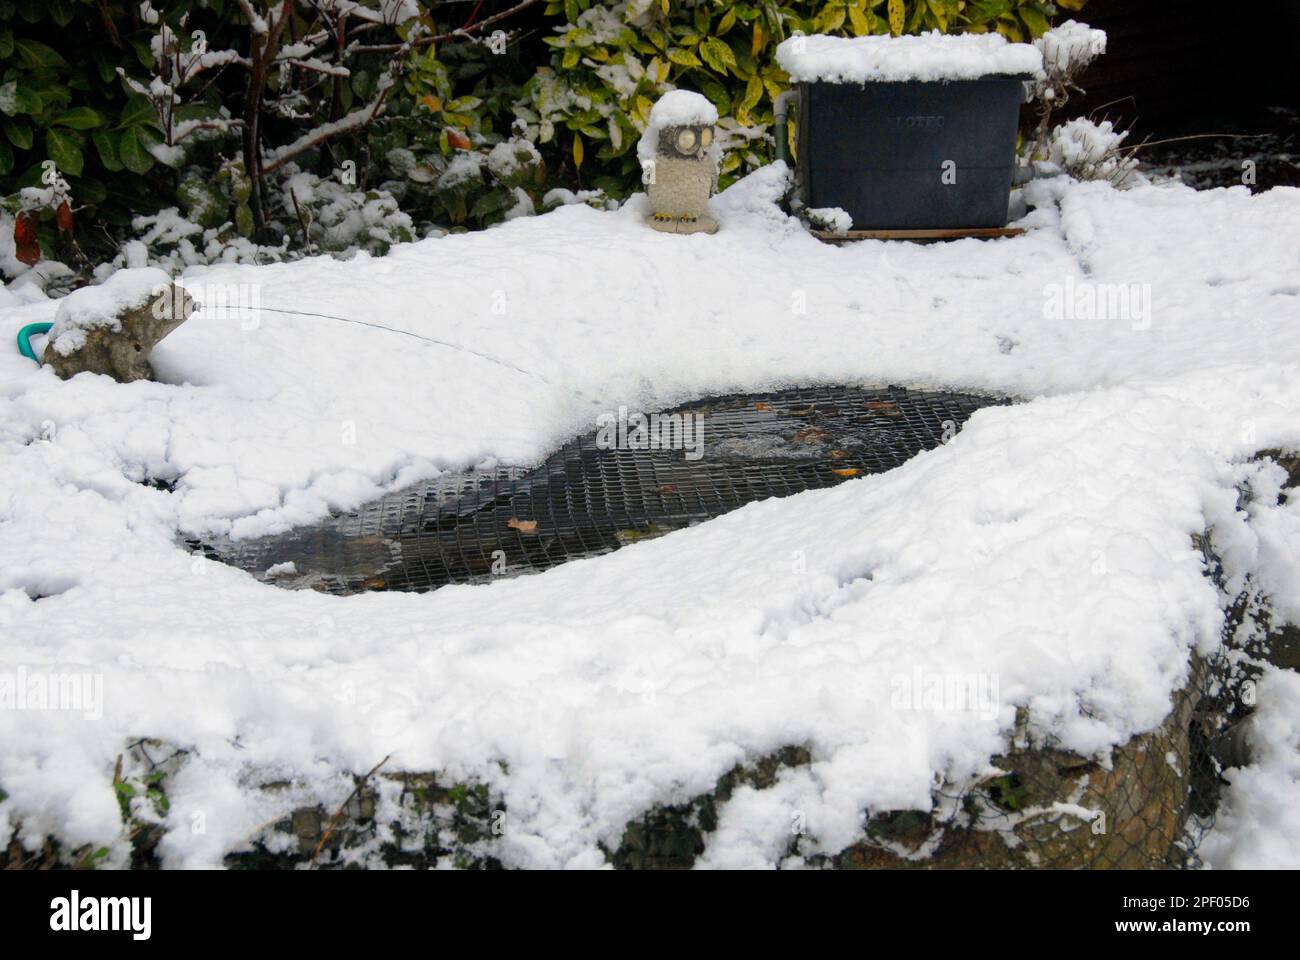 Laghetto da giardino con neve accumulata in inverno, tenuto in luogo dalla rete, con un ruscello d'acqua che mantiene il laghetto parzialmente aperto Foto Stock